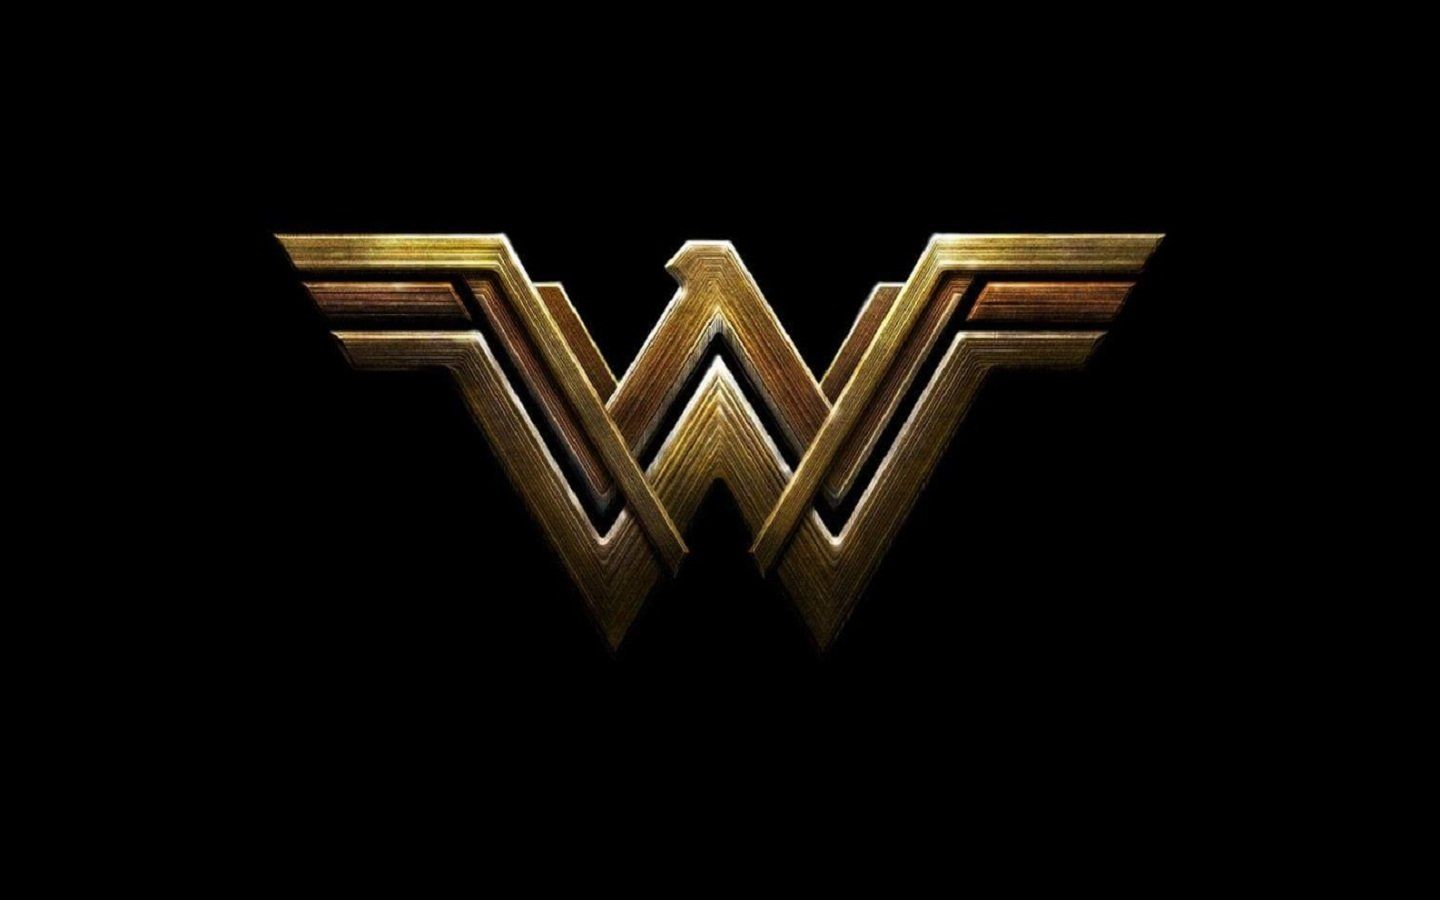 Wonder Woman Logo Wallpaper